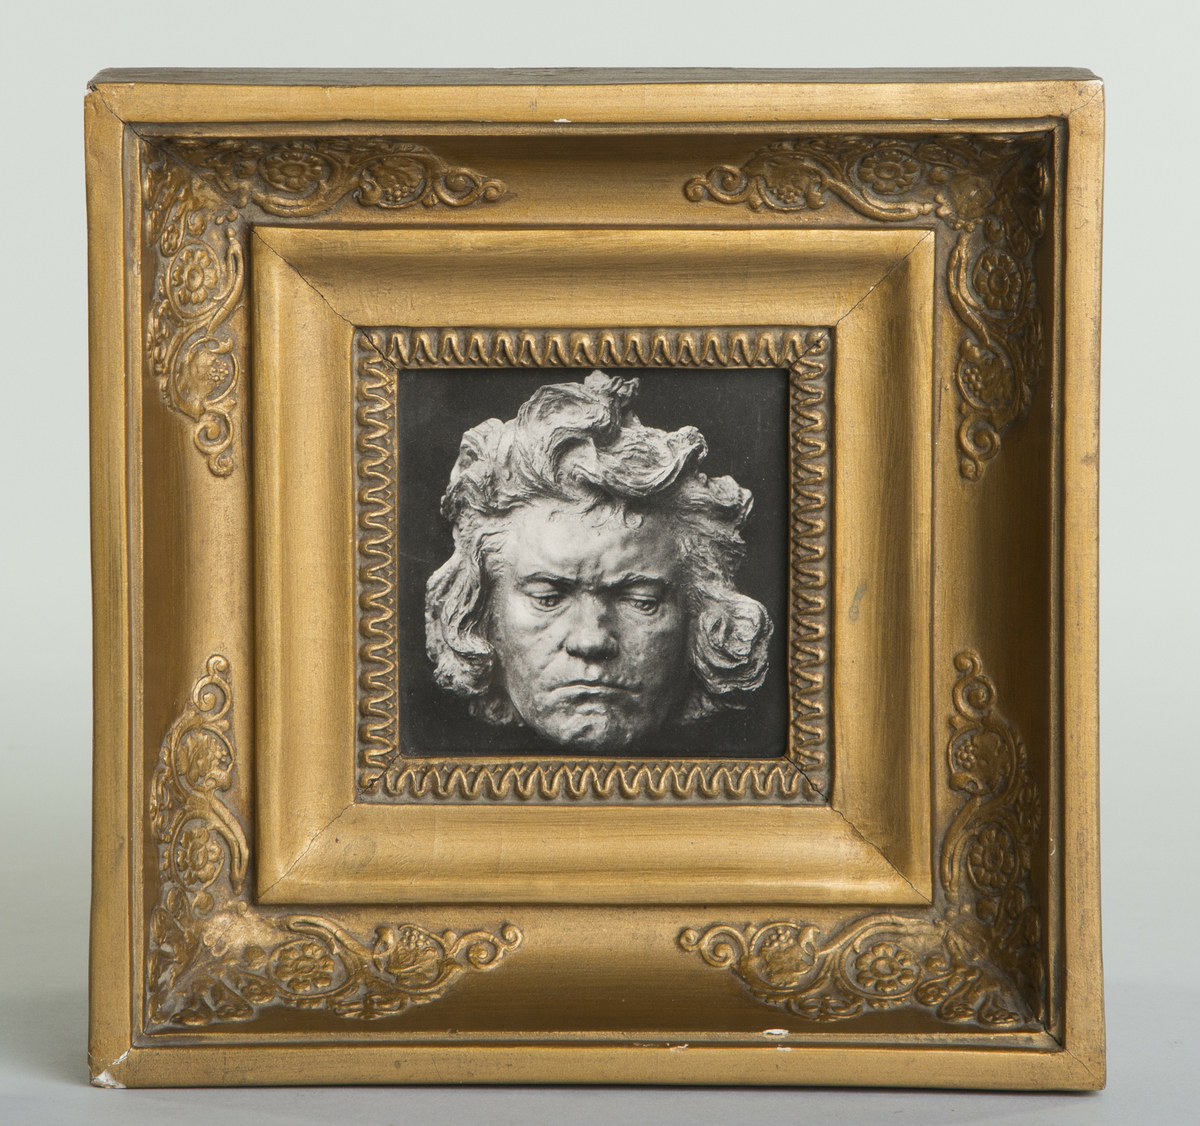 Avfotografering av en skulpturell maske av Beethoven.